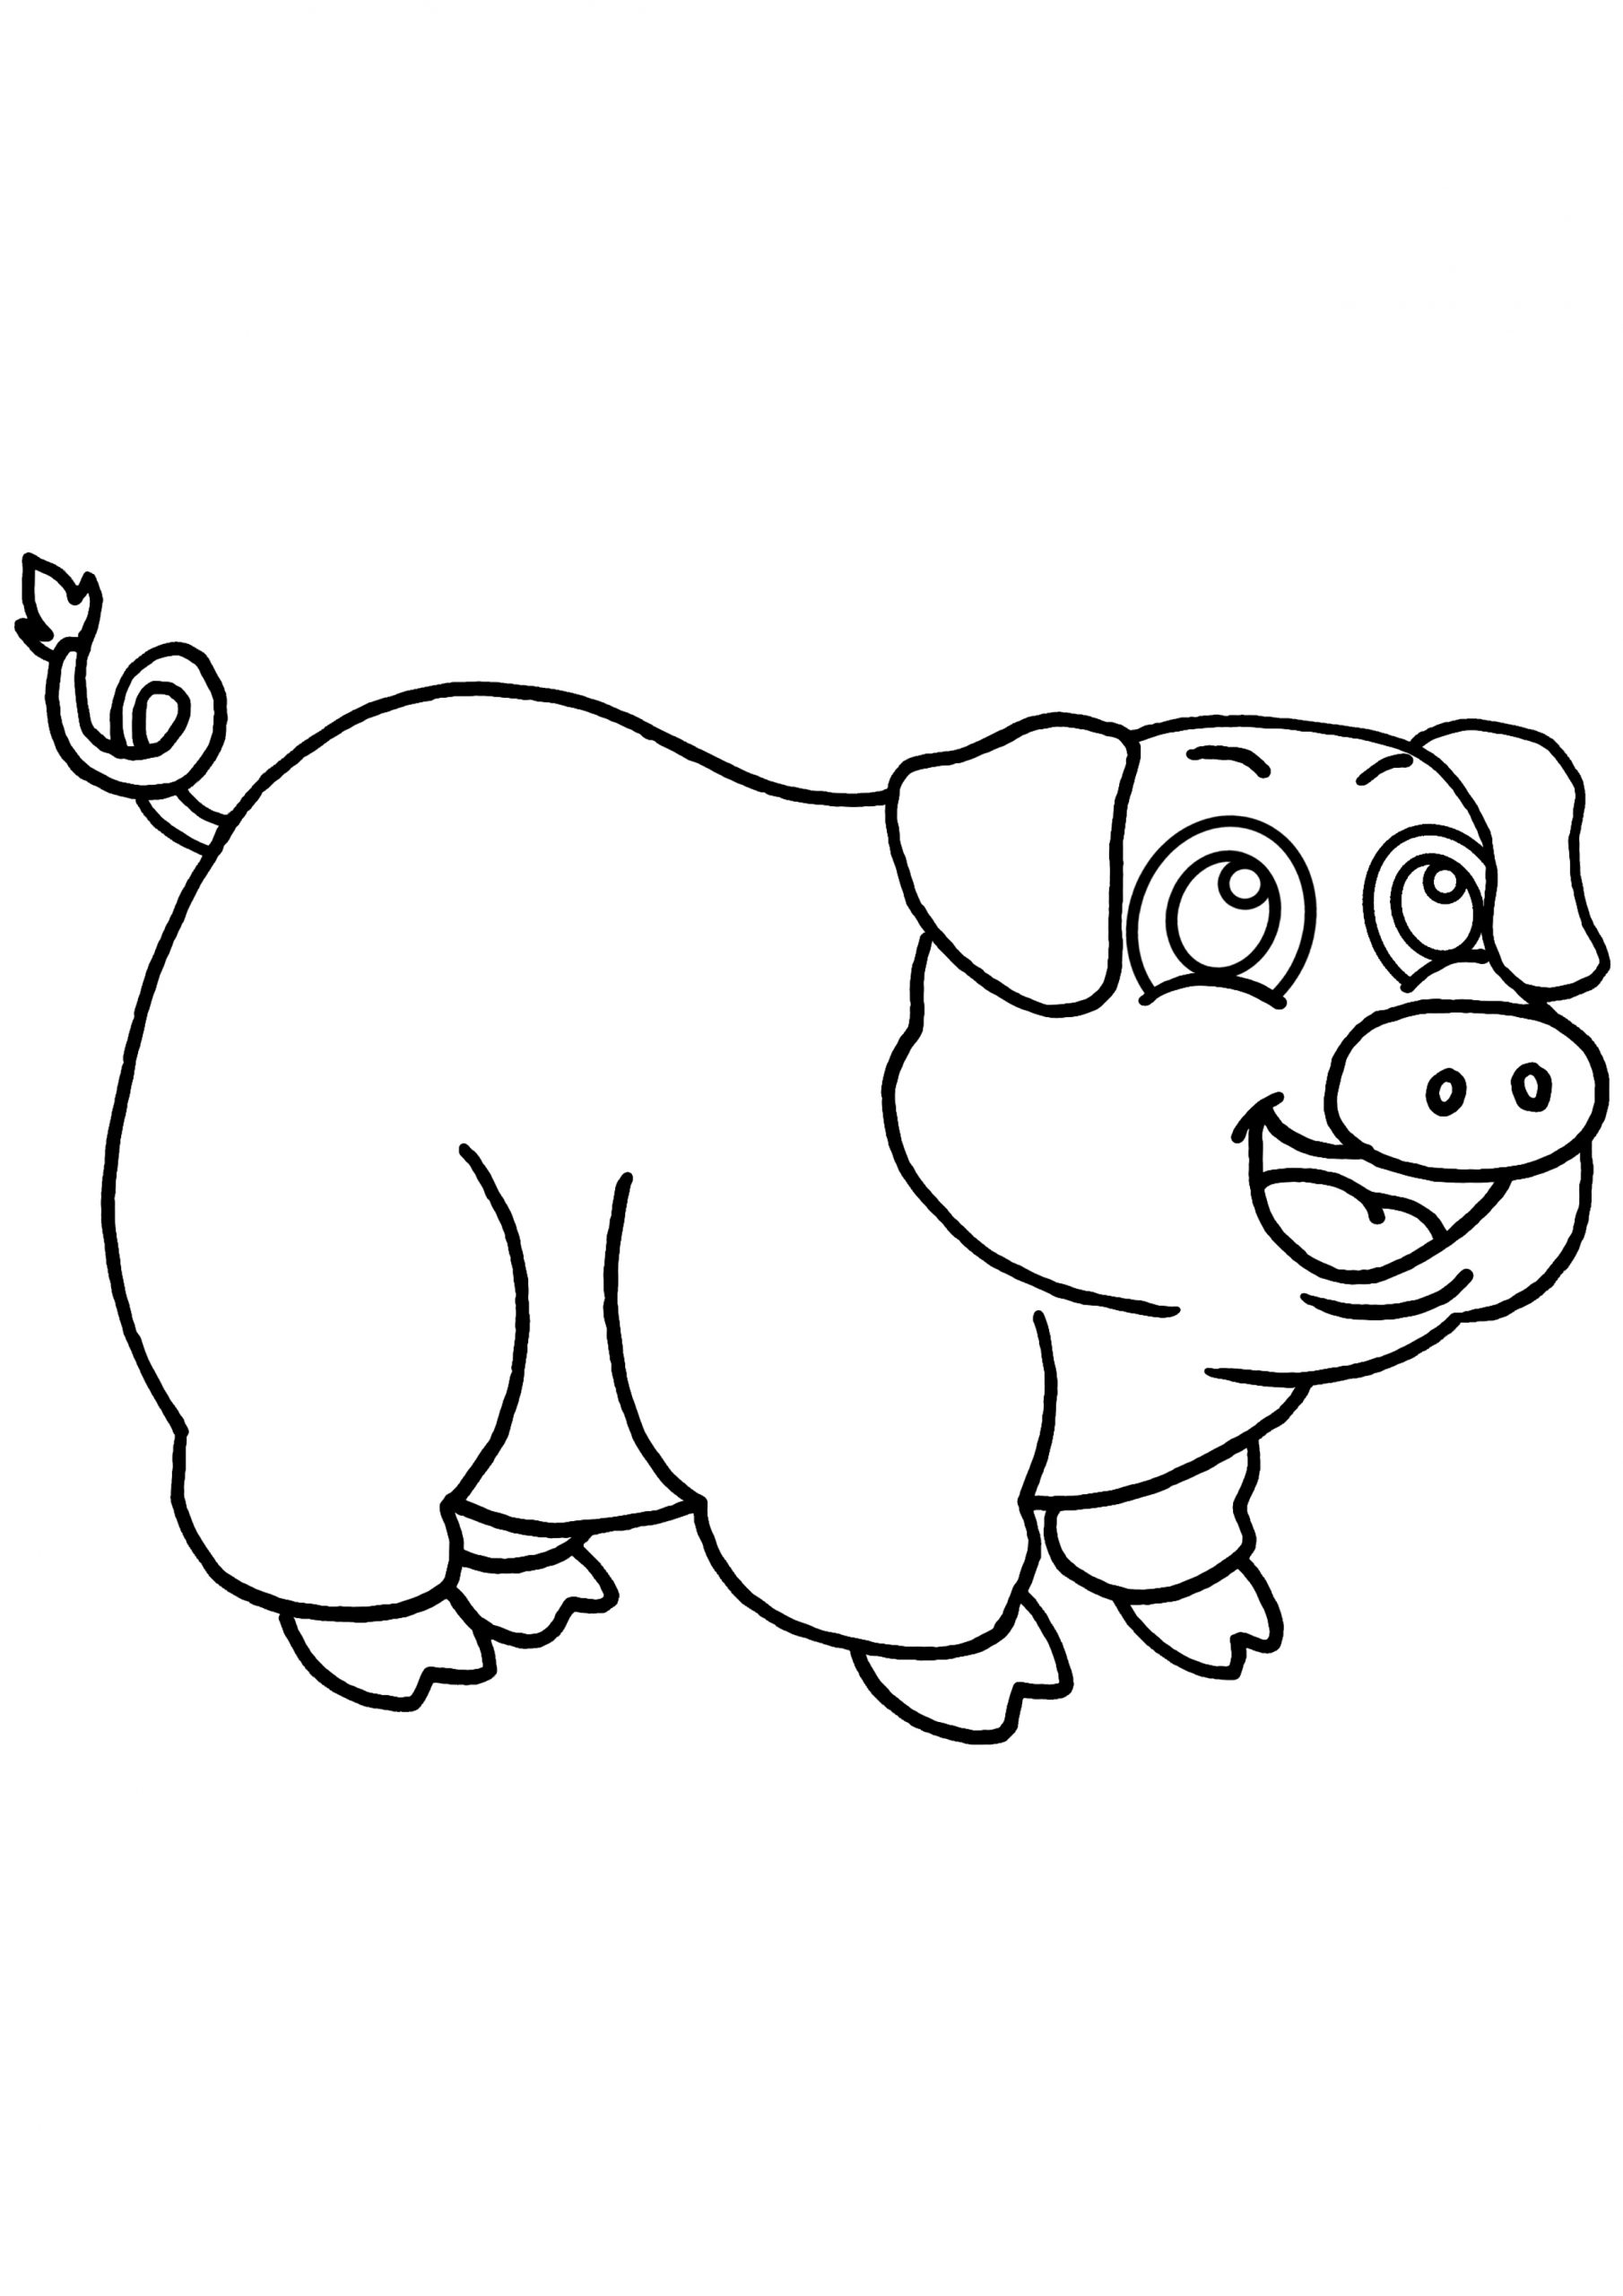 20 Dessins De Coloriage Cochon En Ligne À Imprimer tout Coloriage De Cochon 